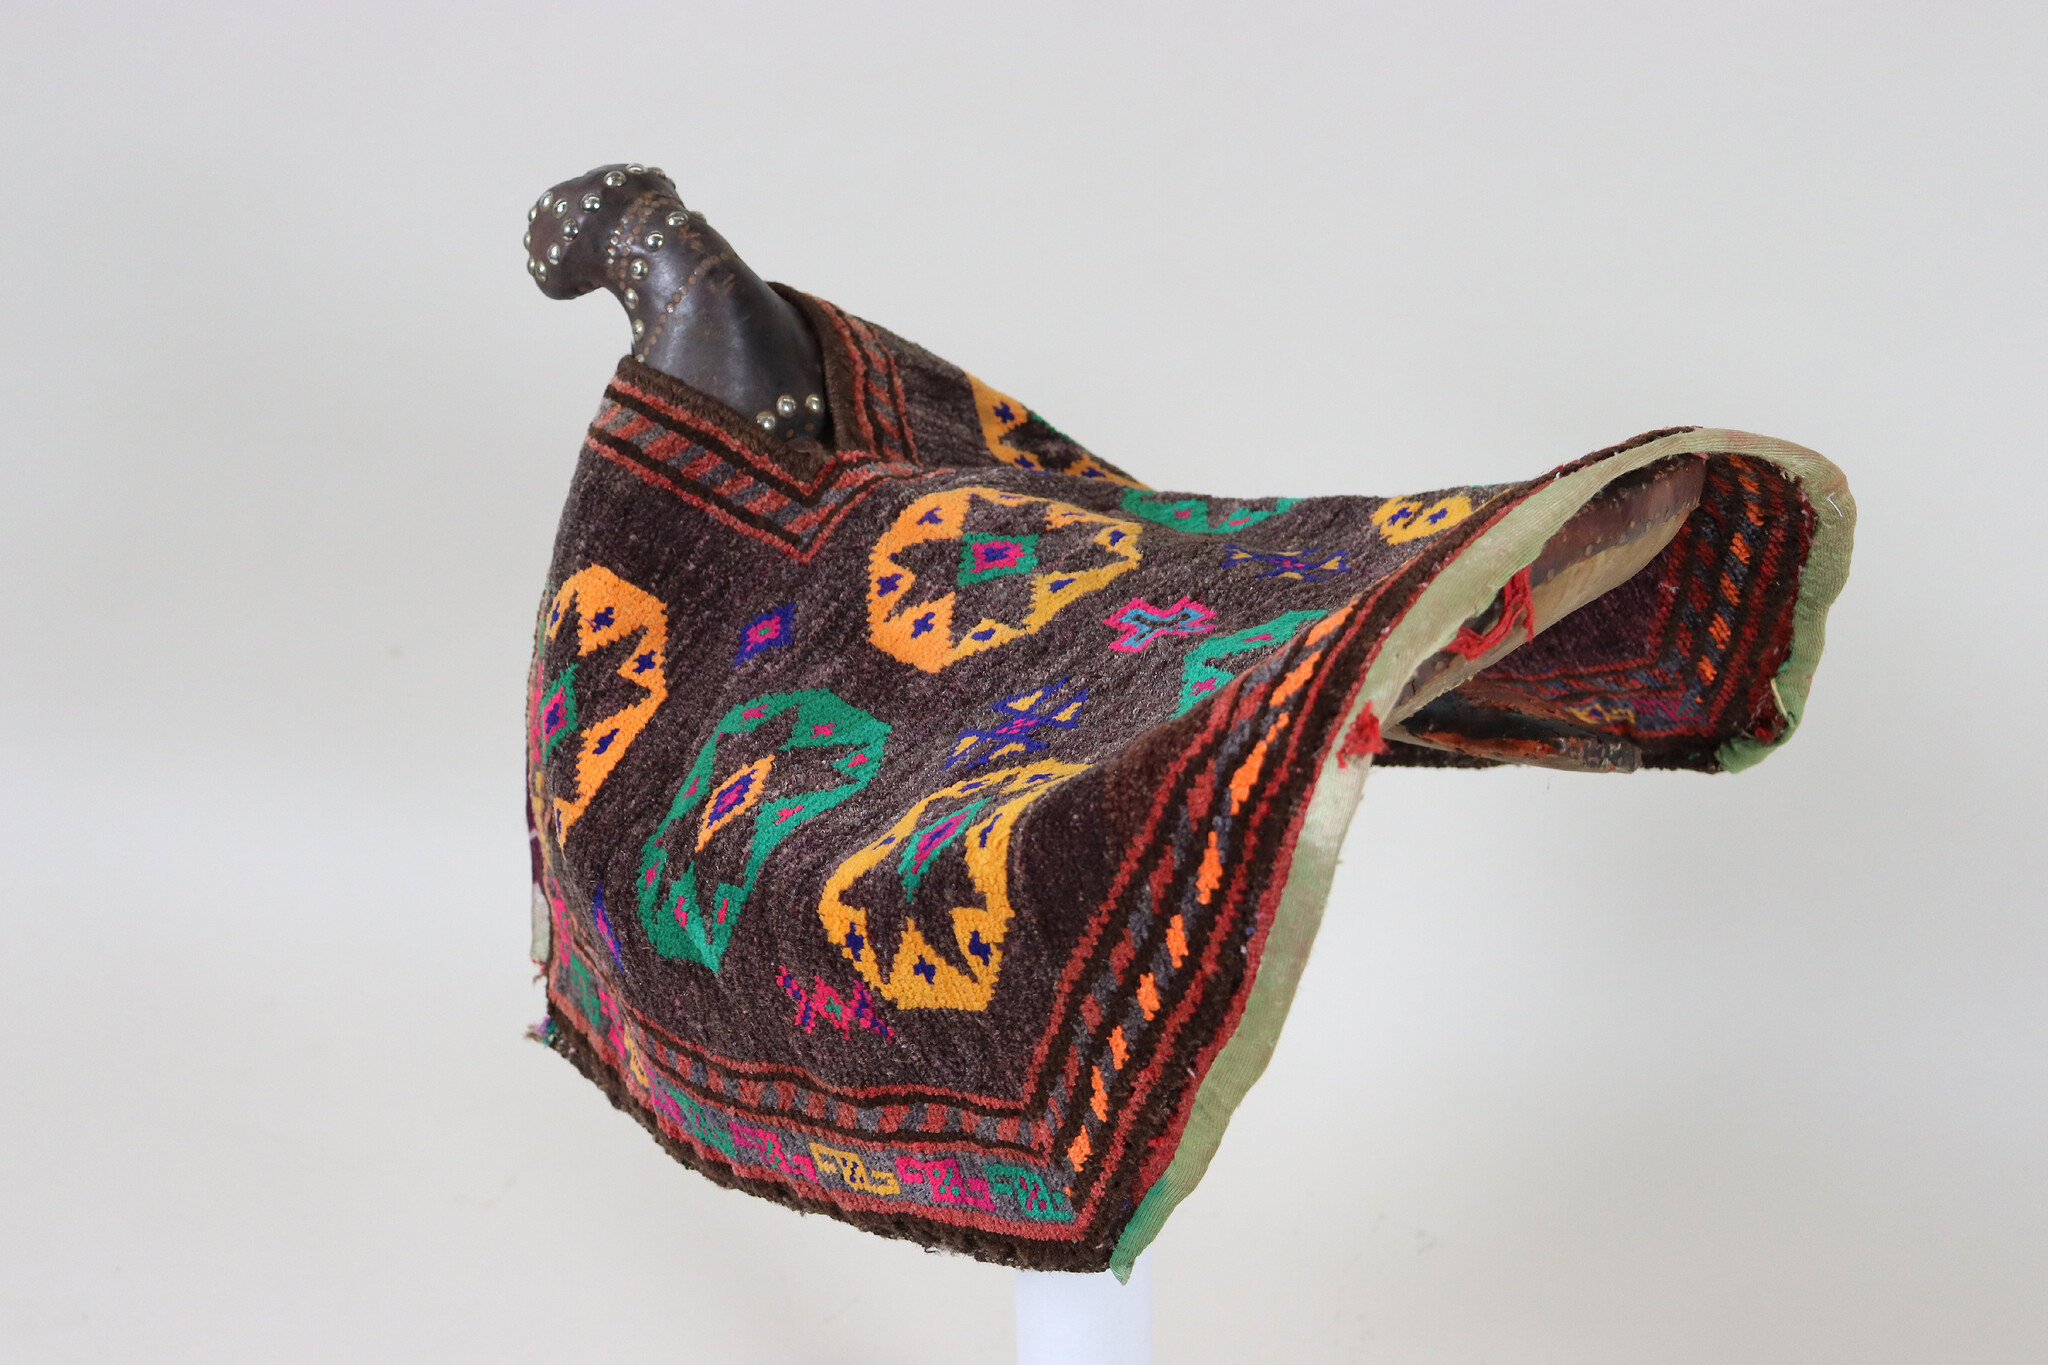 Antiker Beloch Ersari  Design Teppich Pferdesatteldecke Decke Teppich aus Afghanistan  Nr:23E